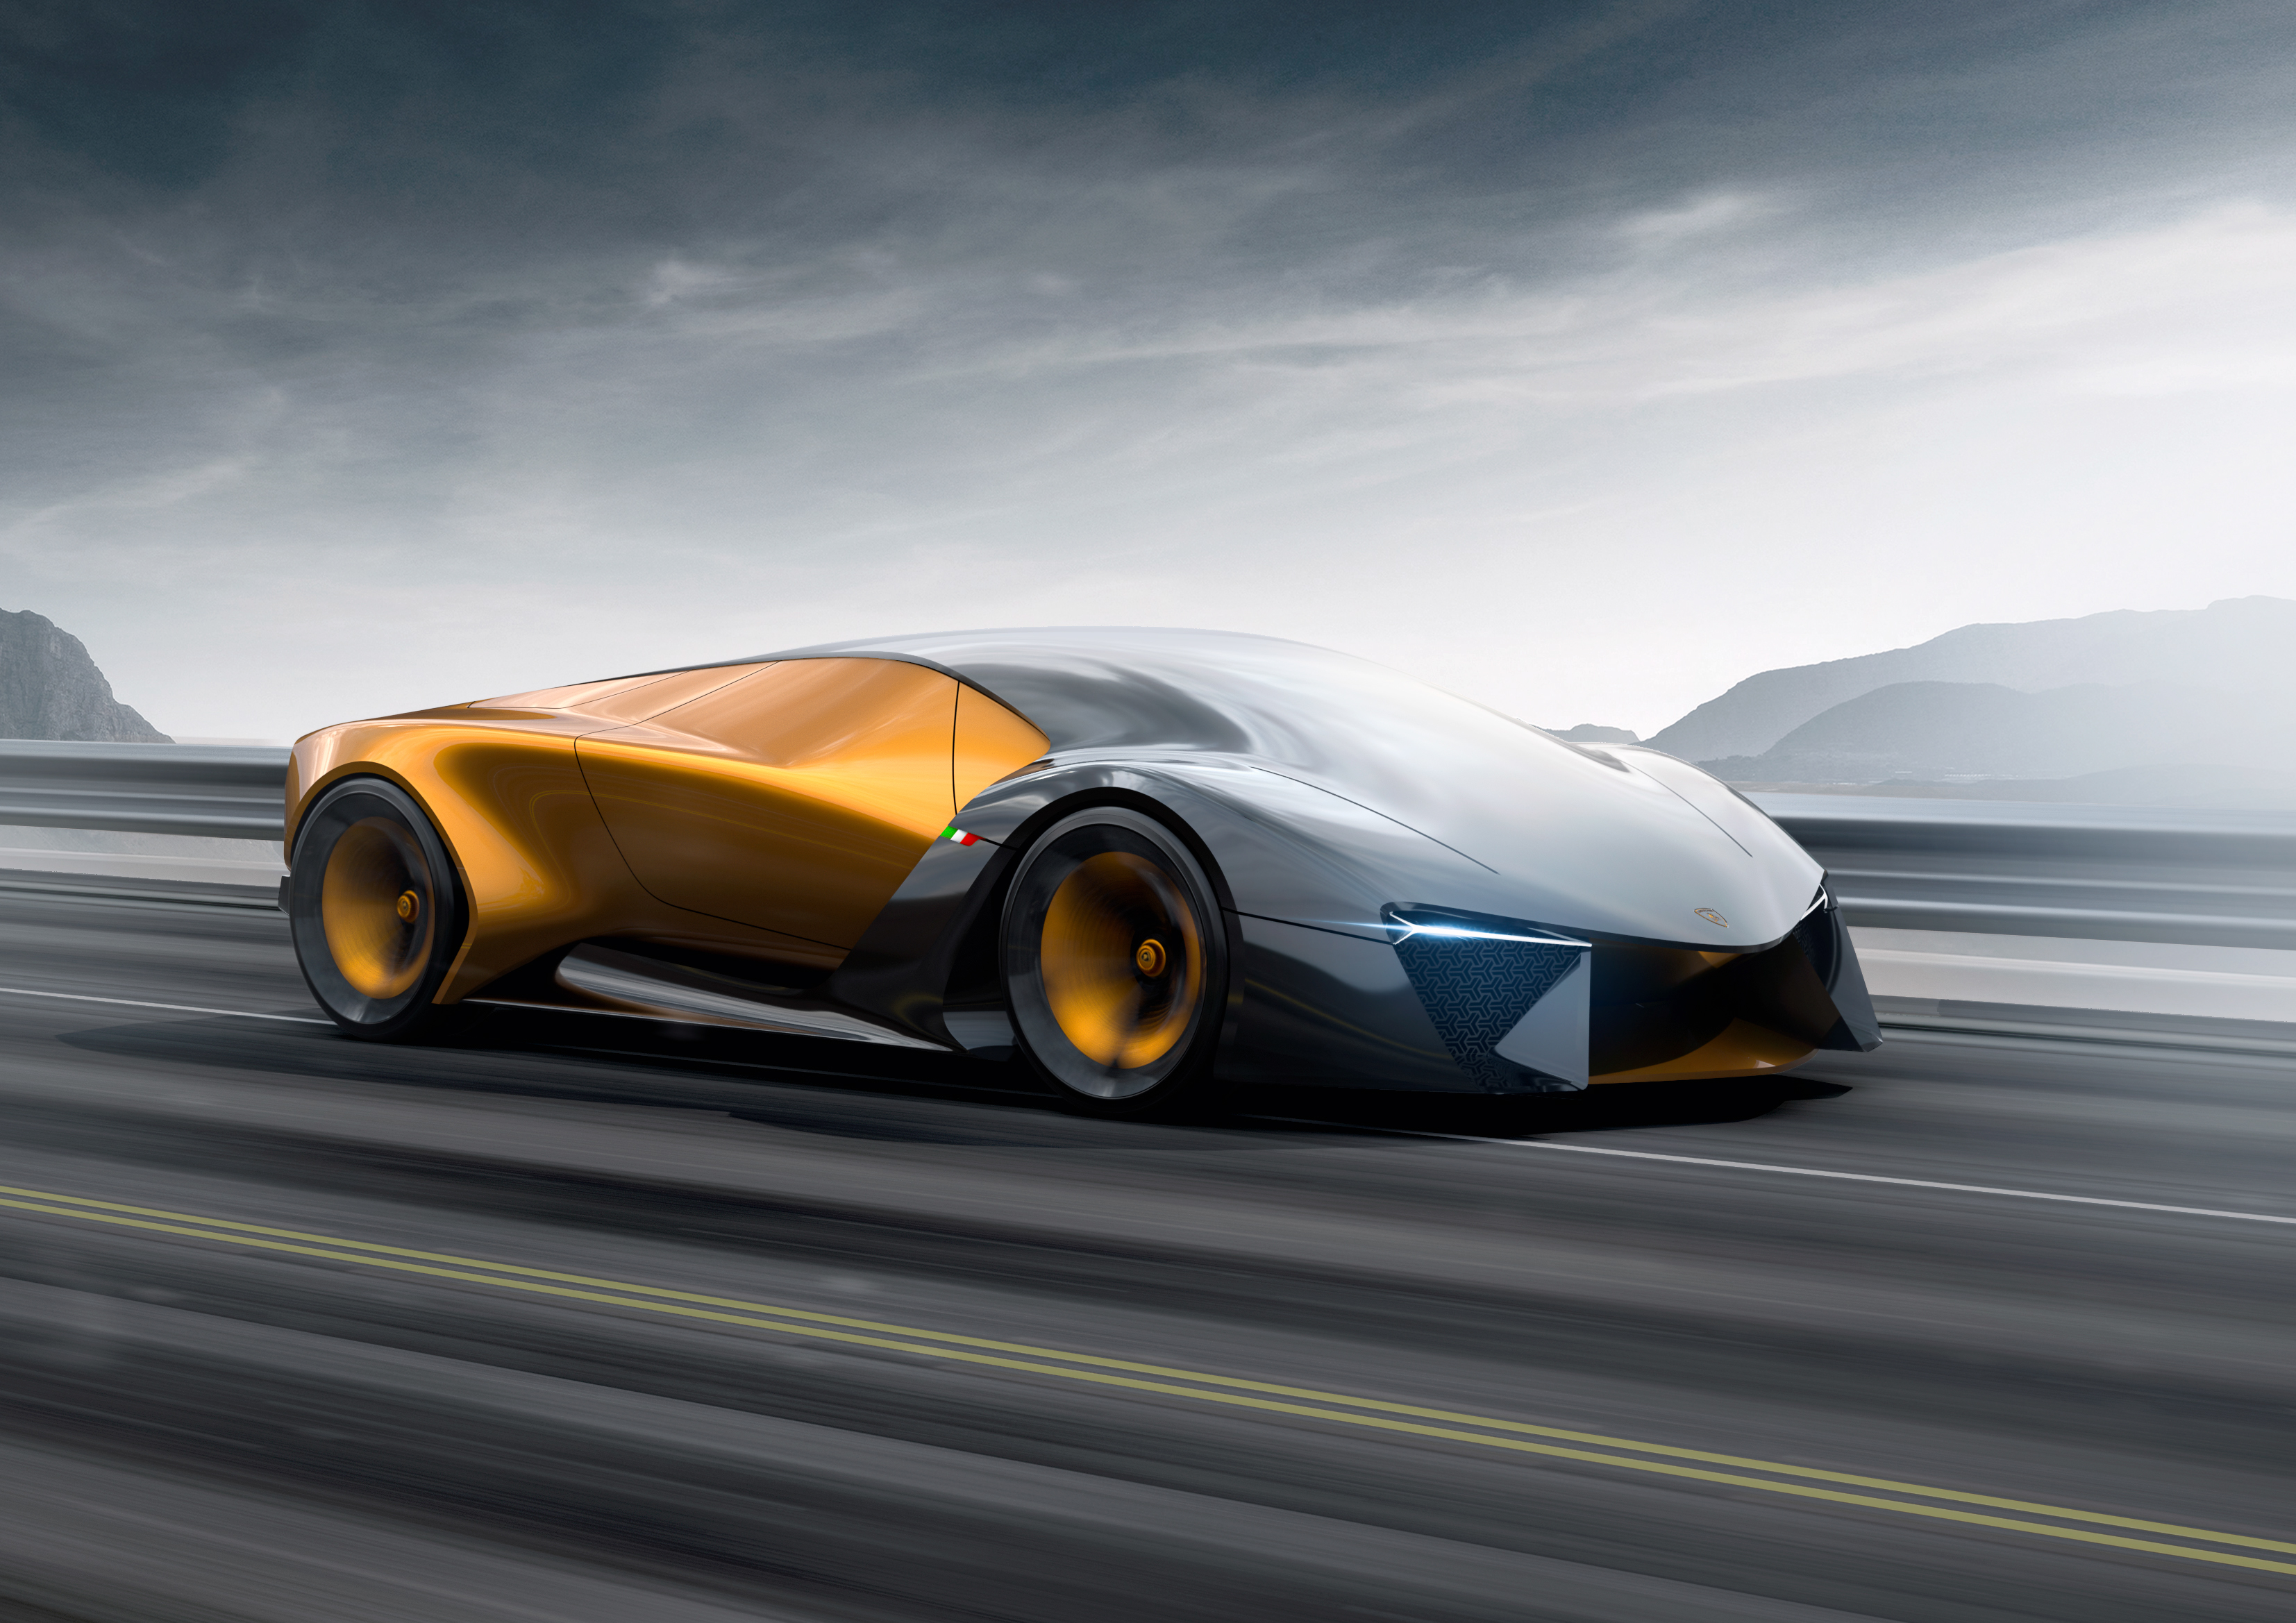 A picture of the Lamborghini Terzo Millennio in motion